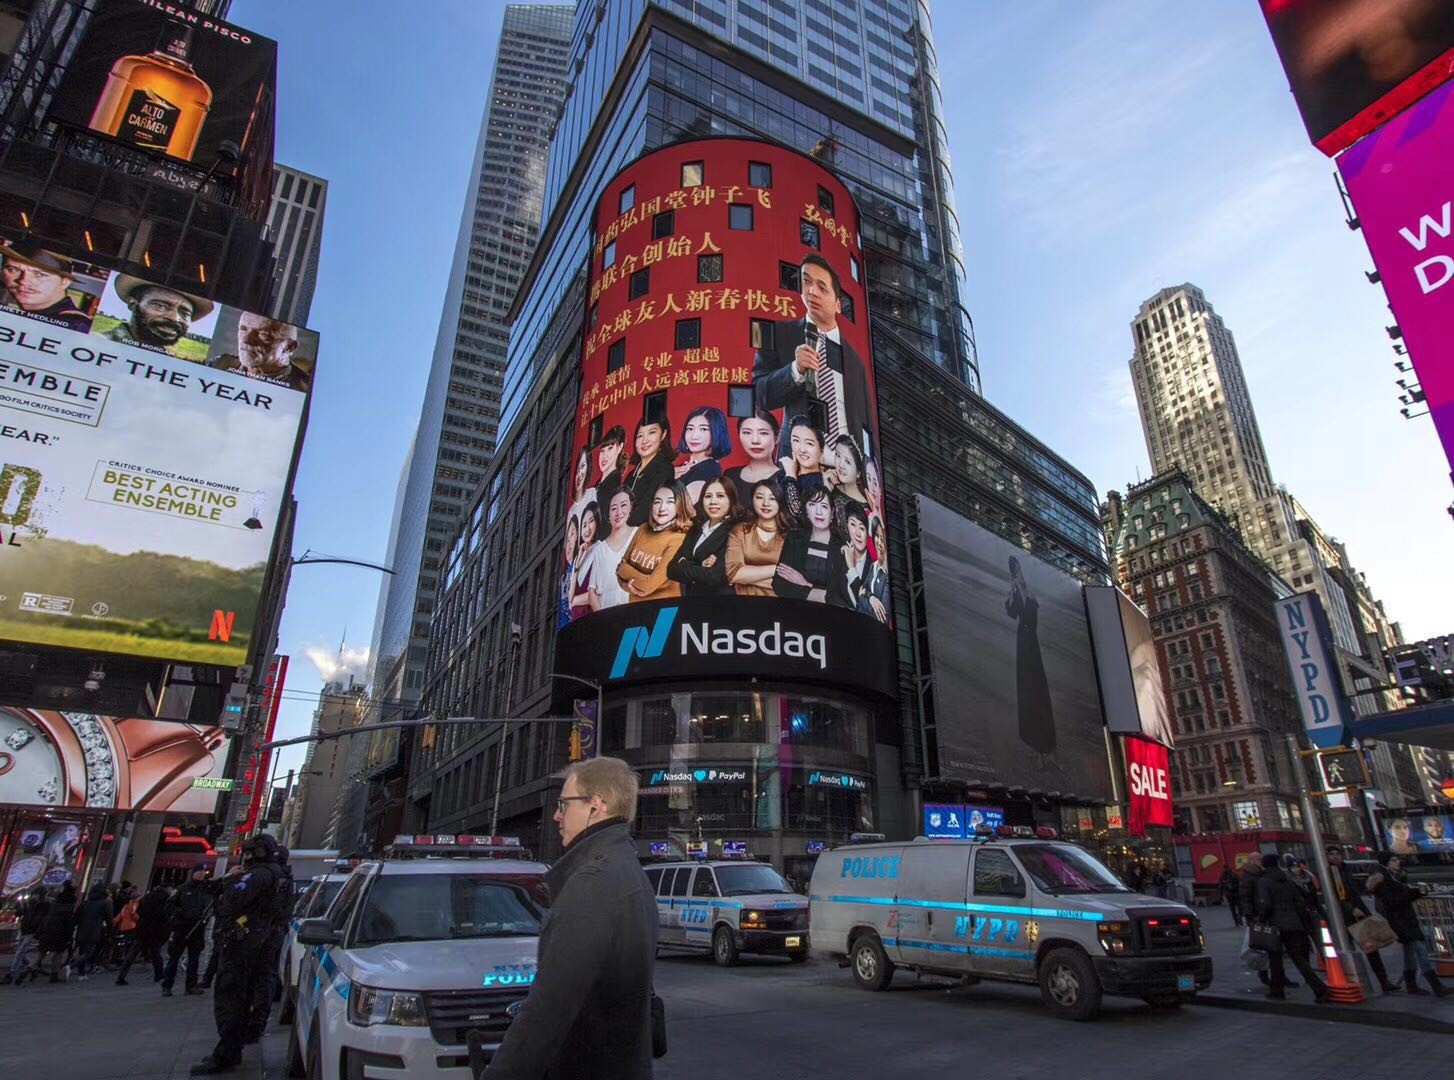 弘国堂创始人携17位联合创始人亮相纽约时代广场纳斯达克大屏